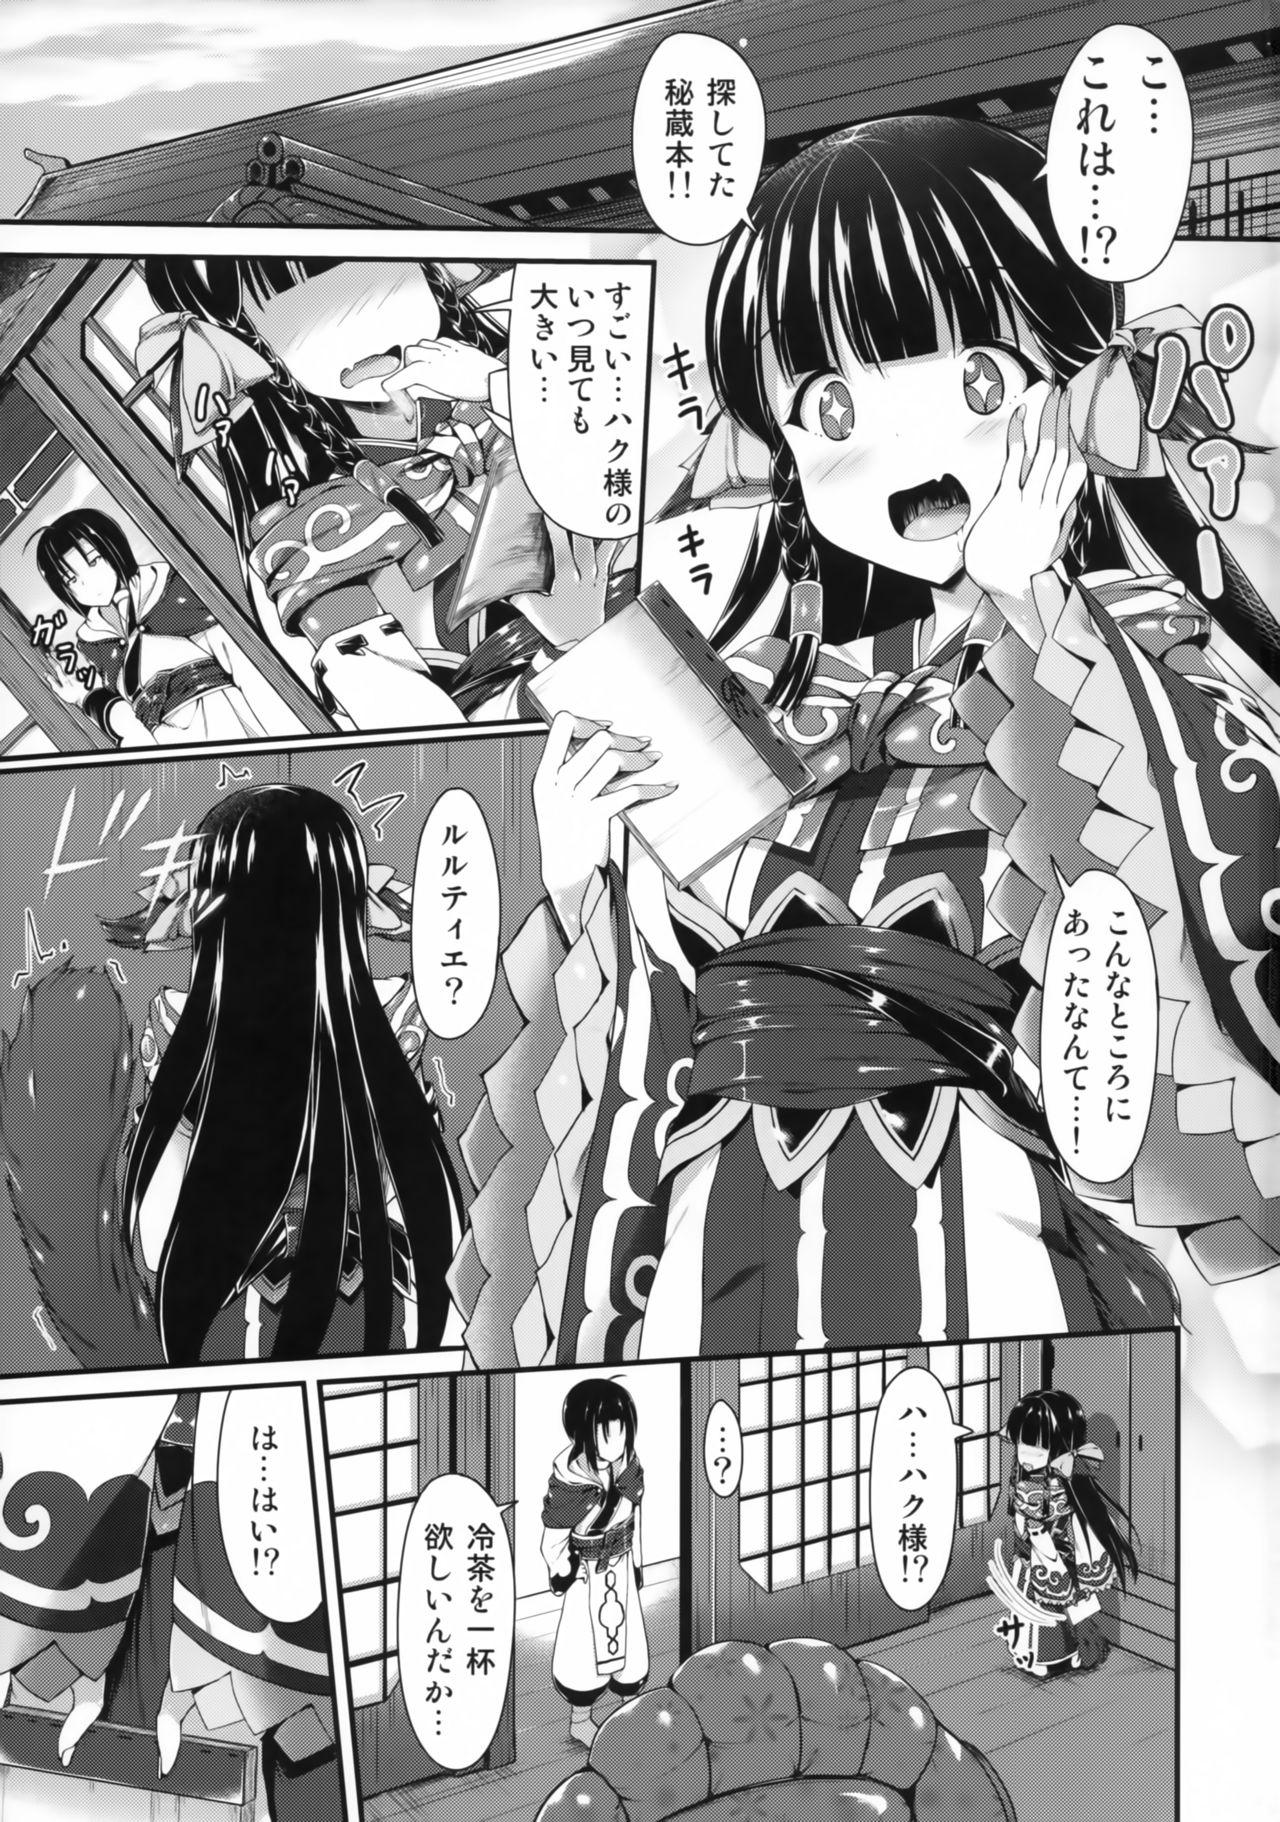 Dildos Haku-sama no Monotte Ookii no? - Utawarerumono itsuwari no kamen Group - Page 2